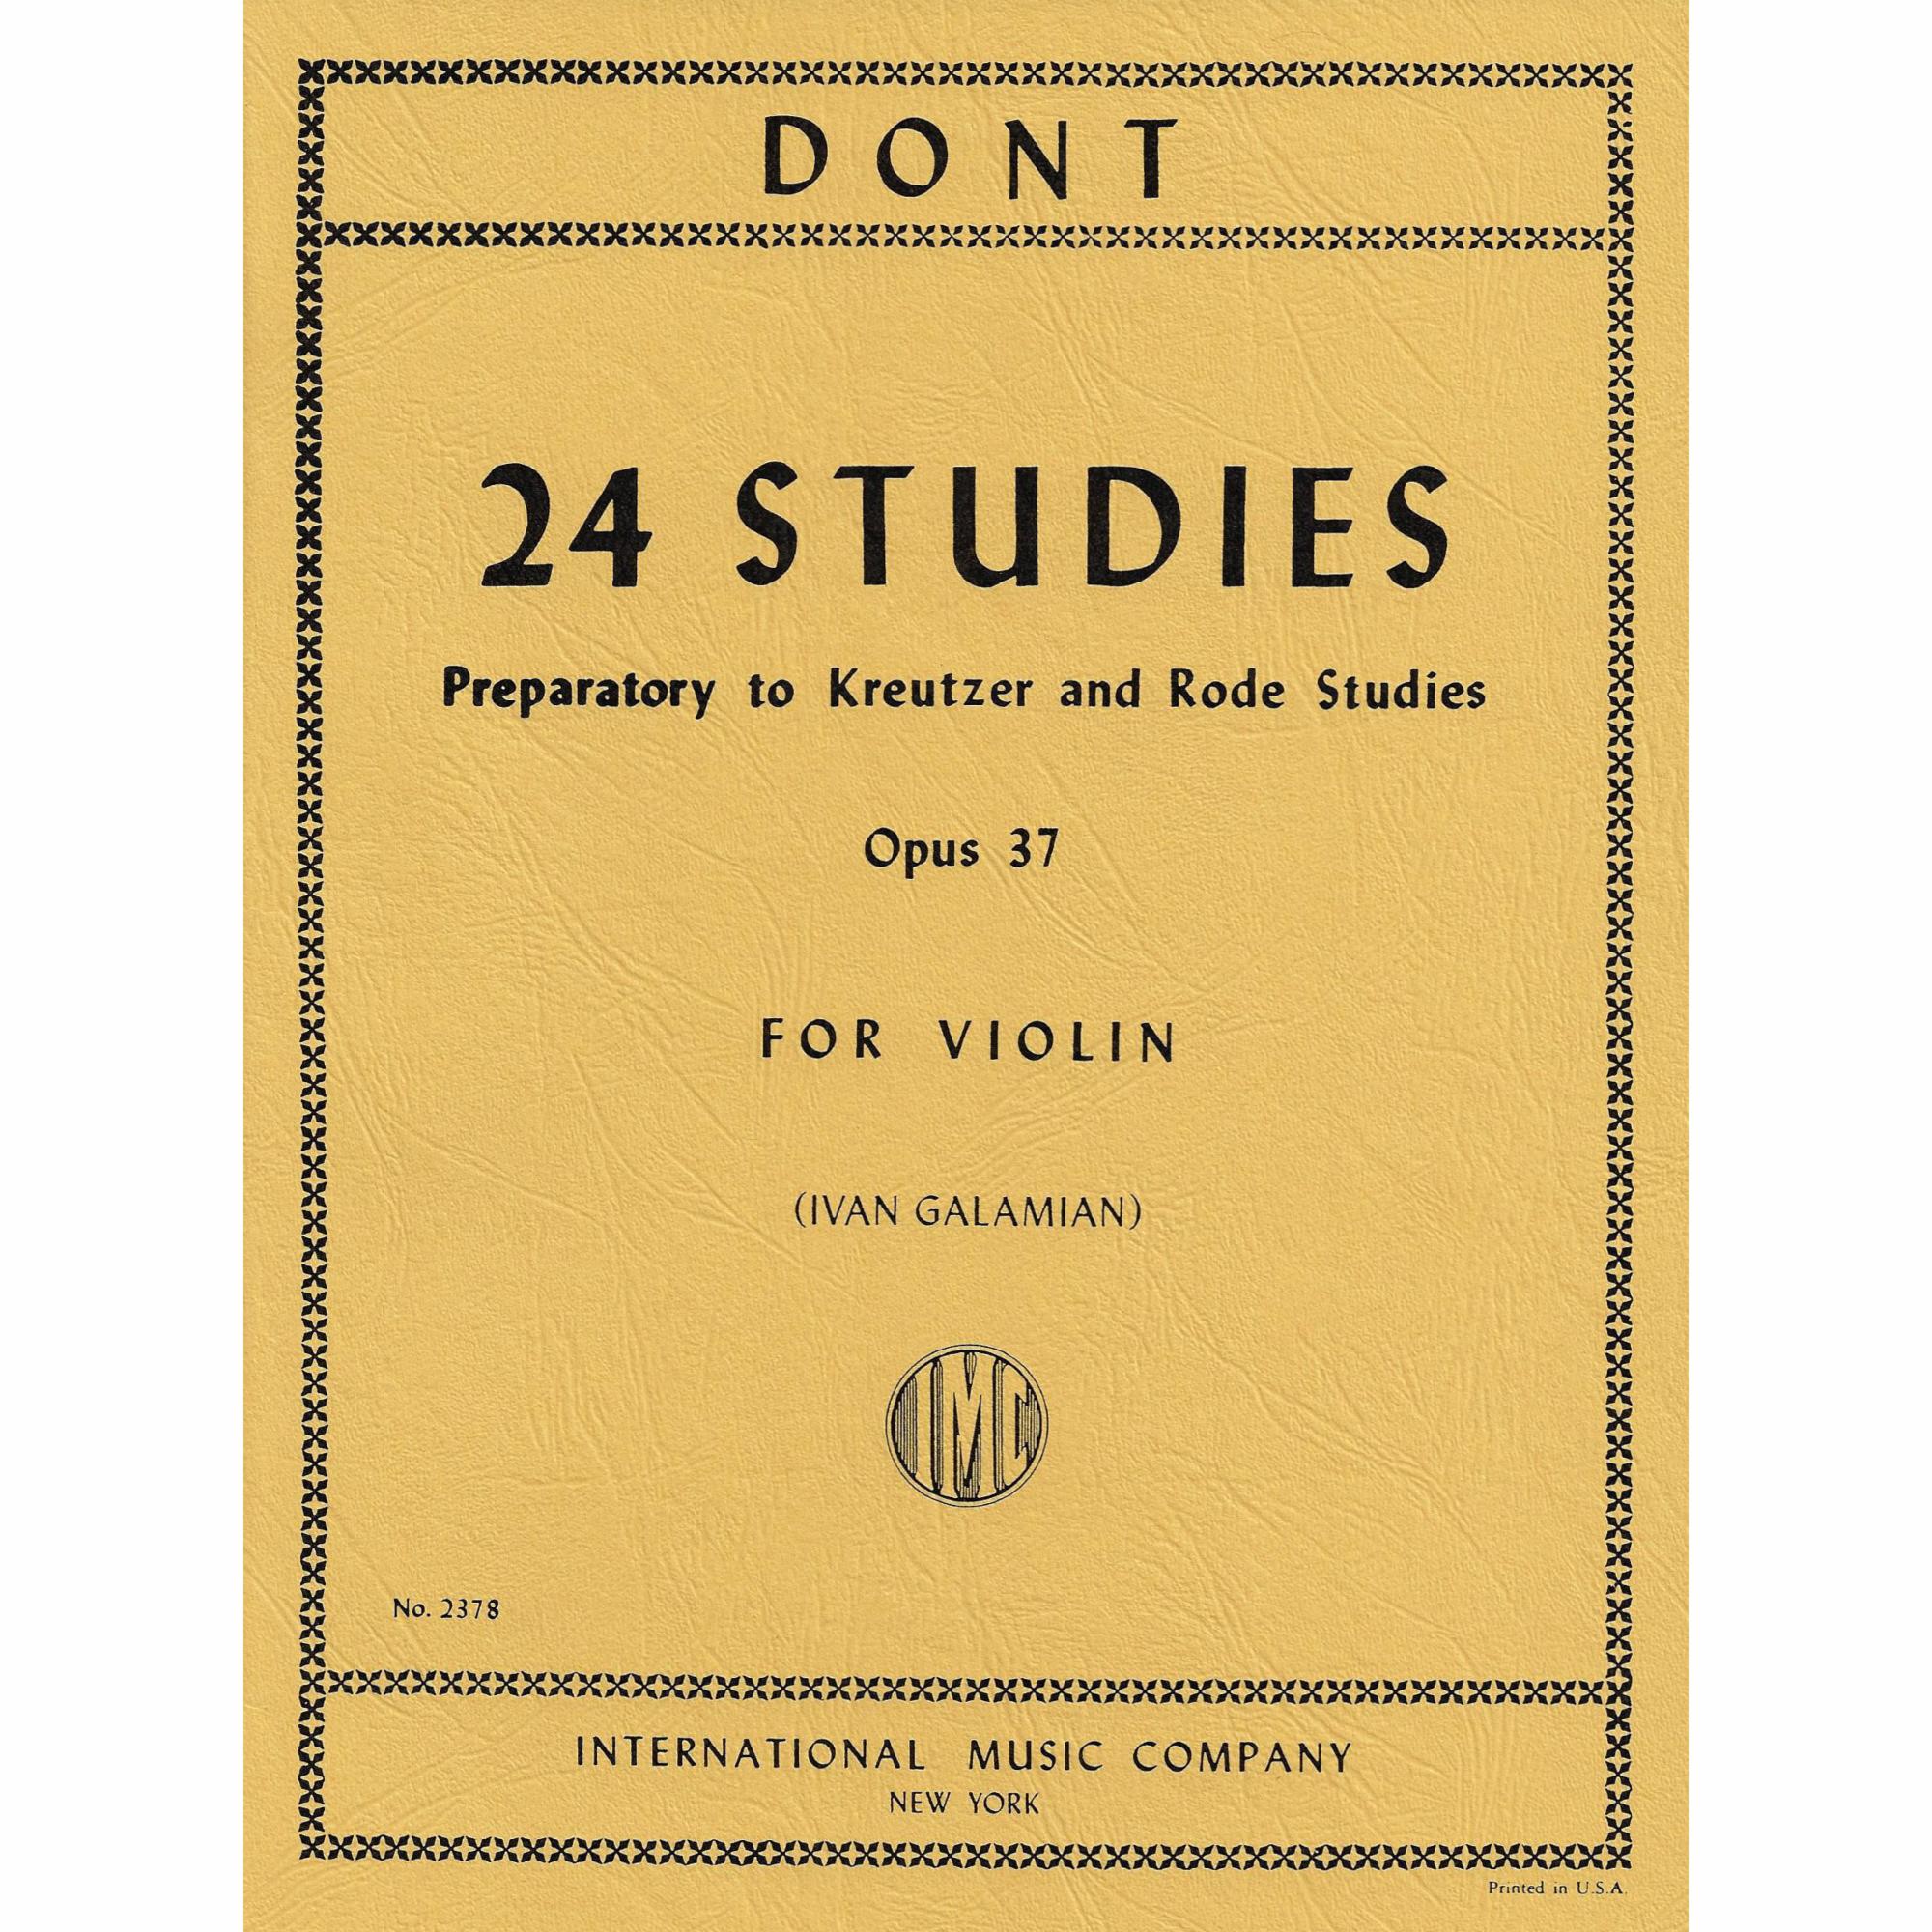 Dont -- 24 Studies, Op. 37 for Violin